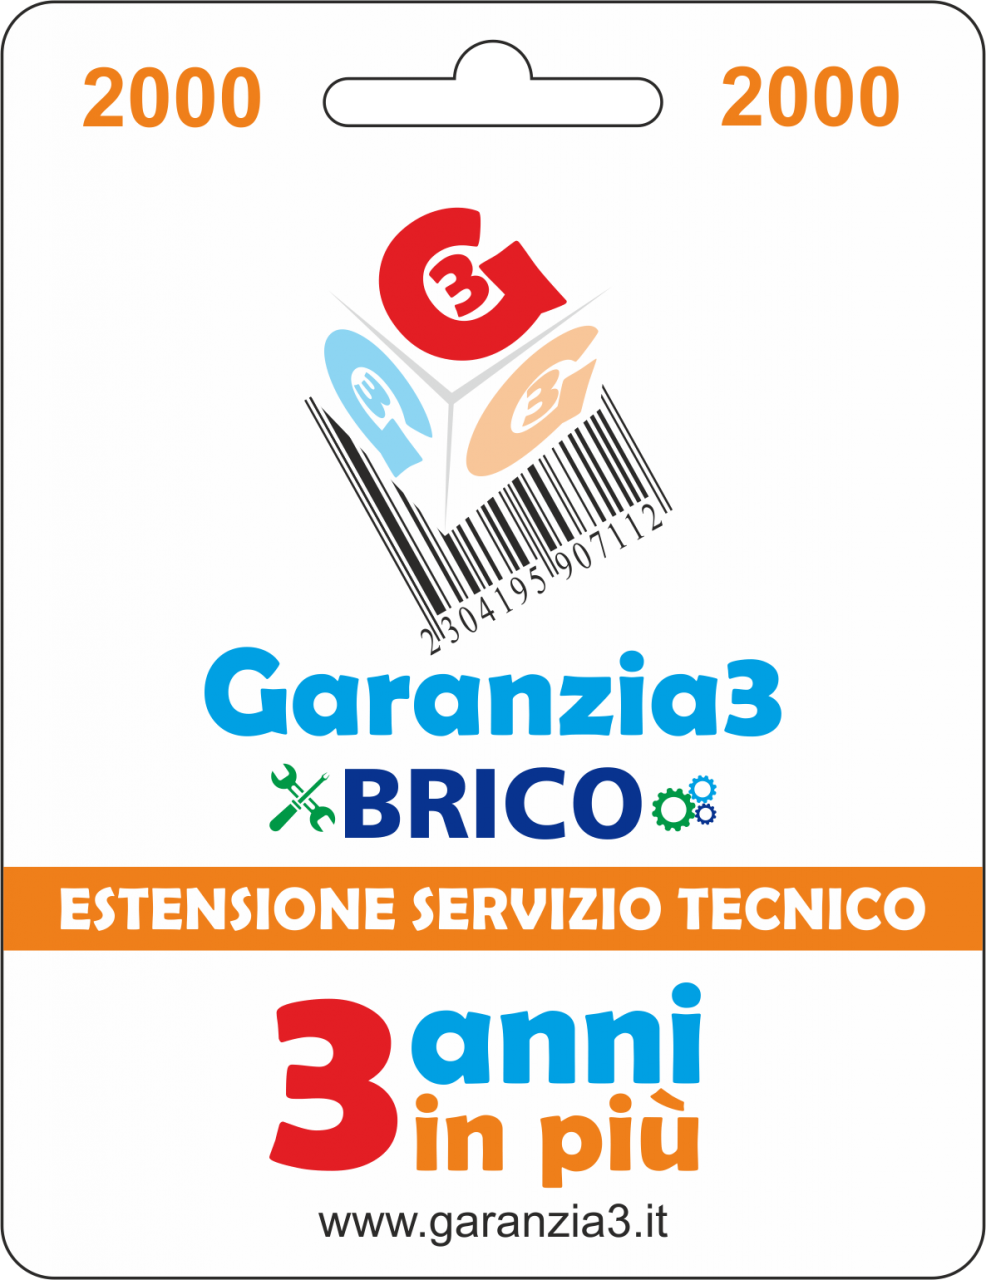 Garanzia3 Brico –Massimale 2000